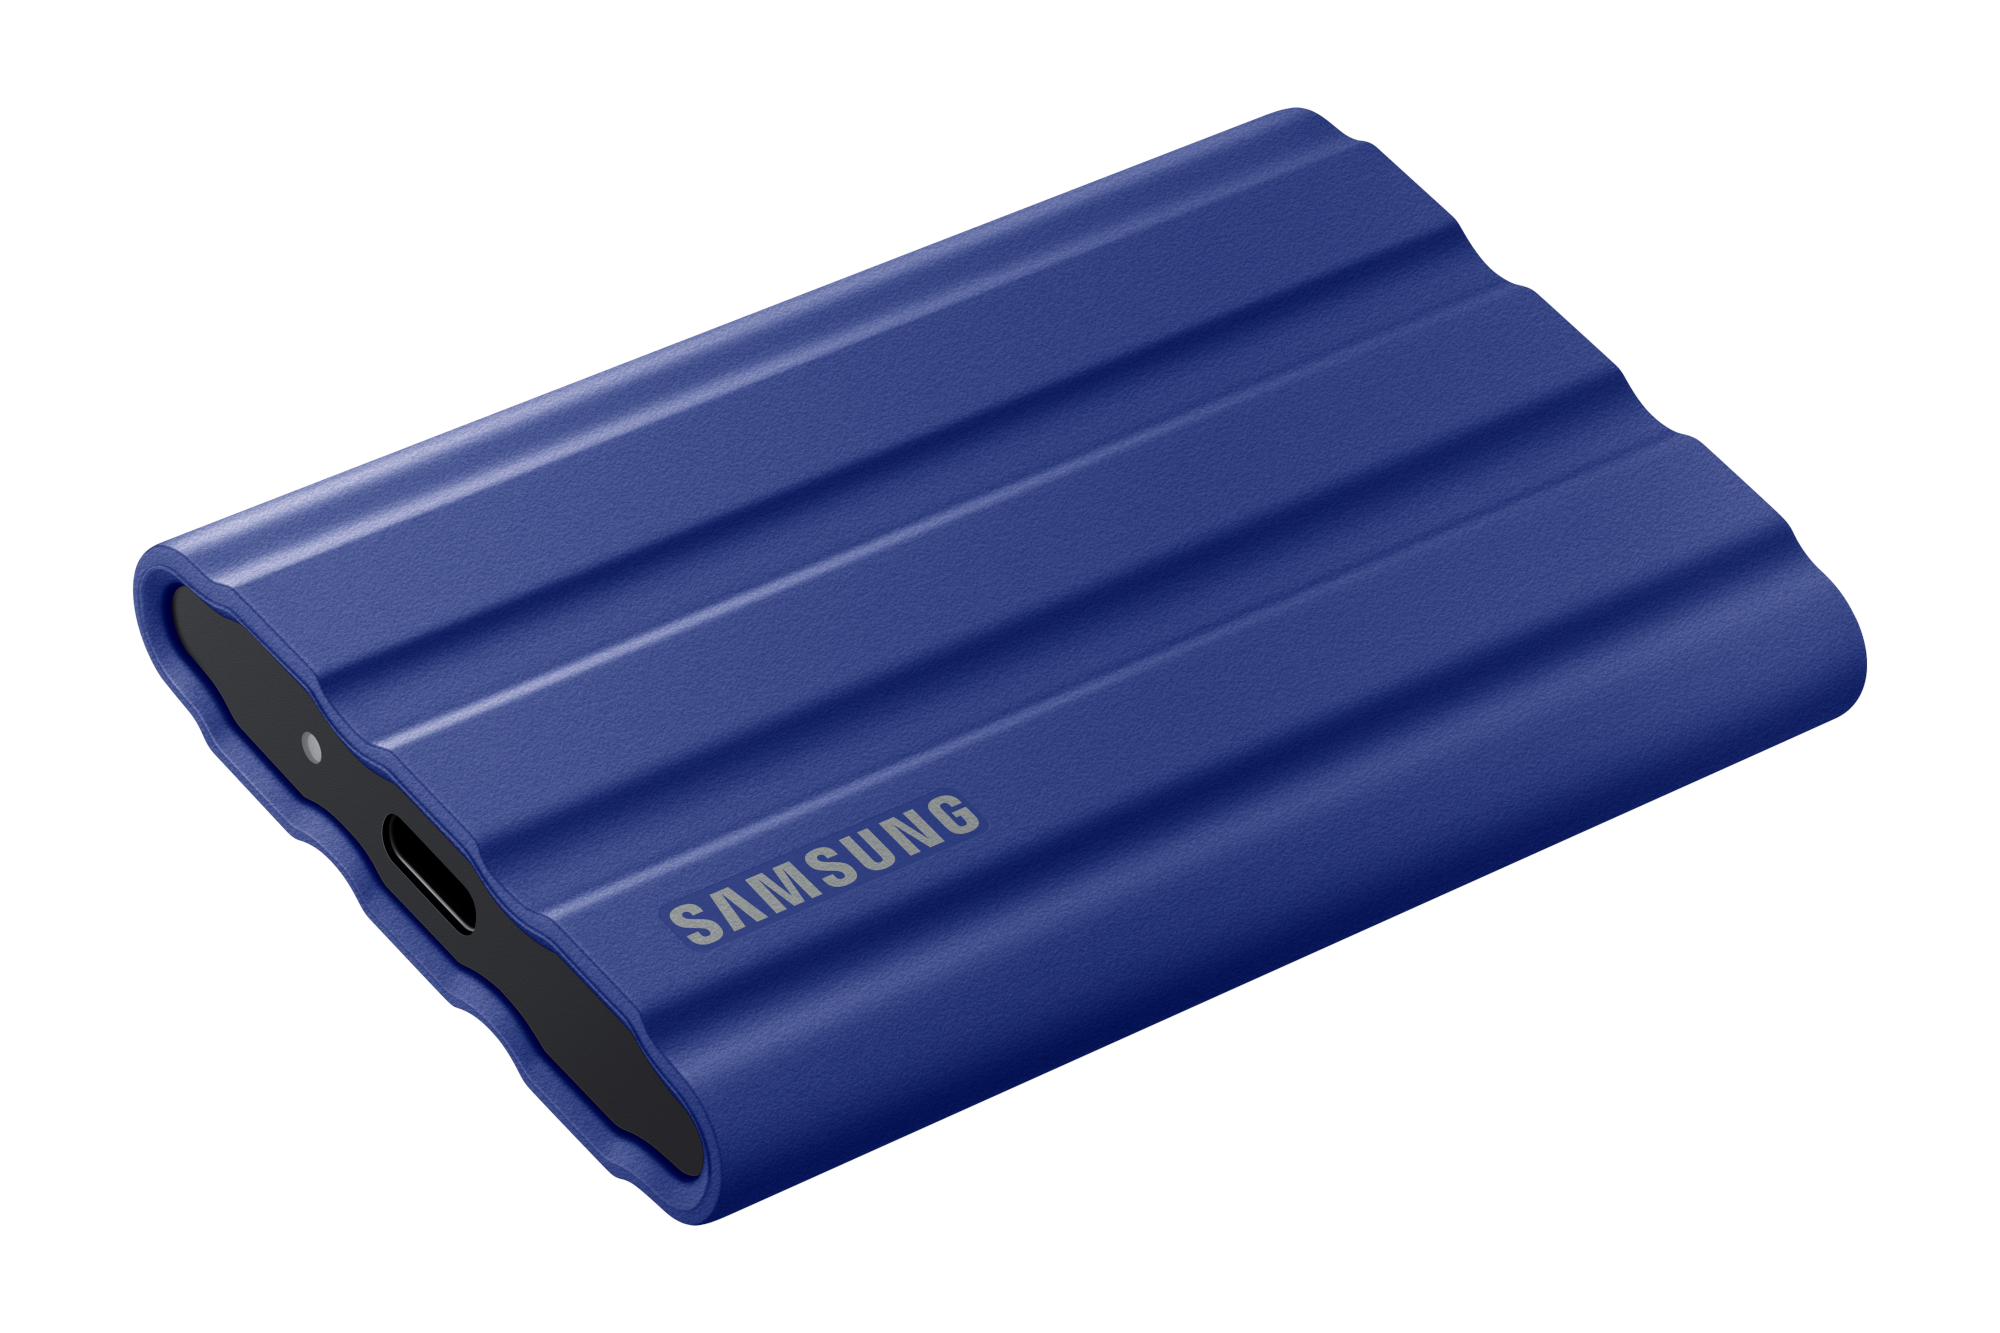 Samsung T7 Shield - USB-drive met de beste prestaties